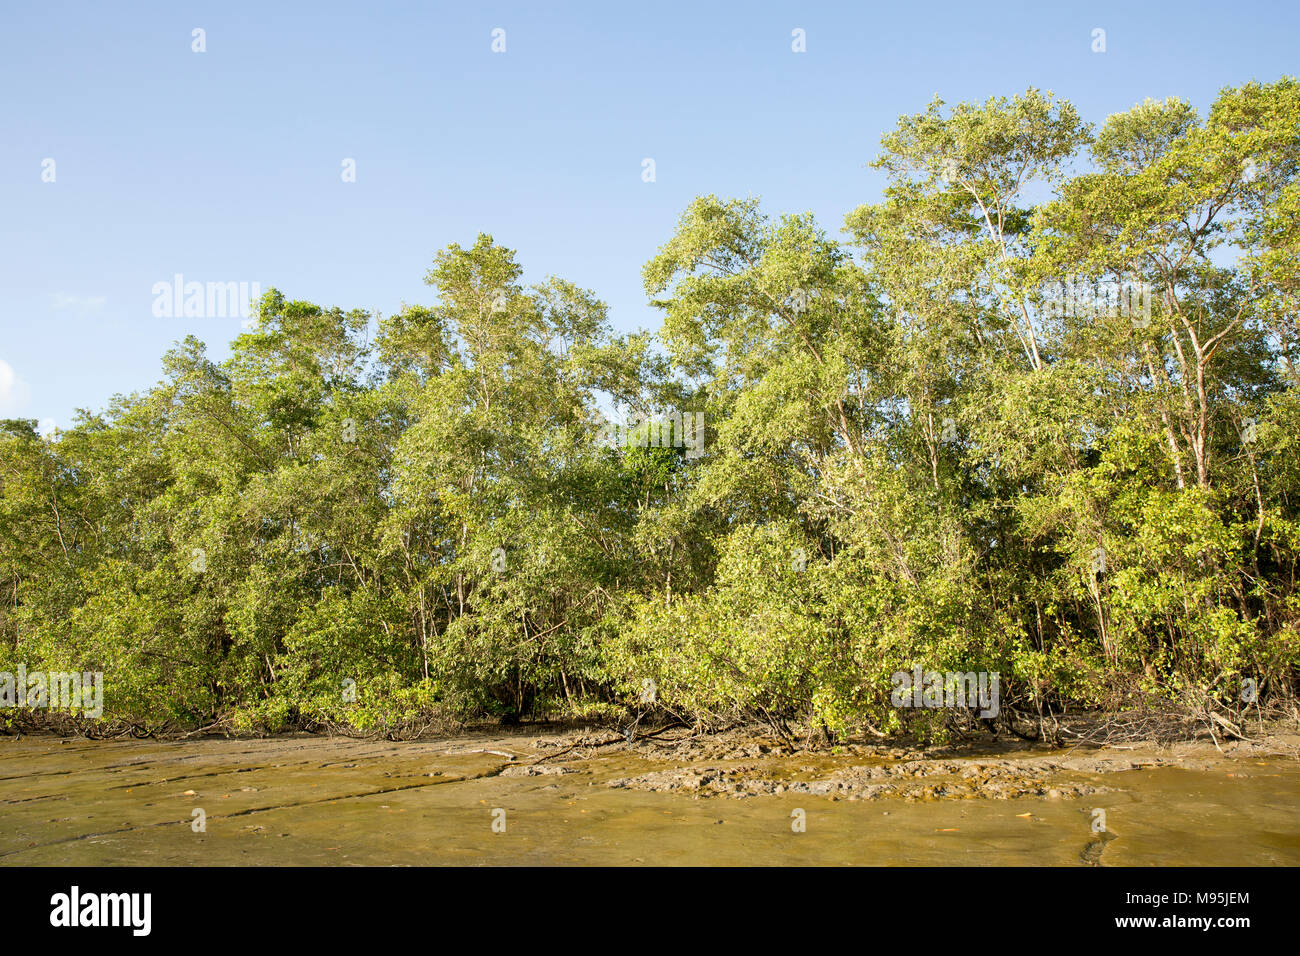 Forro de los manglares de las orillas del río Surinam, cerca de la capital de Surinam, Paramaribo. Suriname tiene extensos manglares. Foto de stock